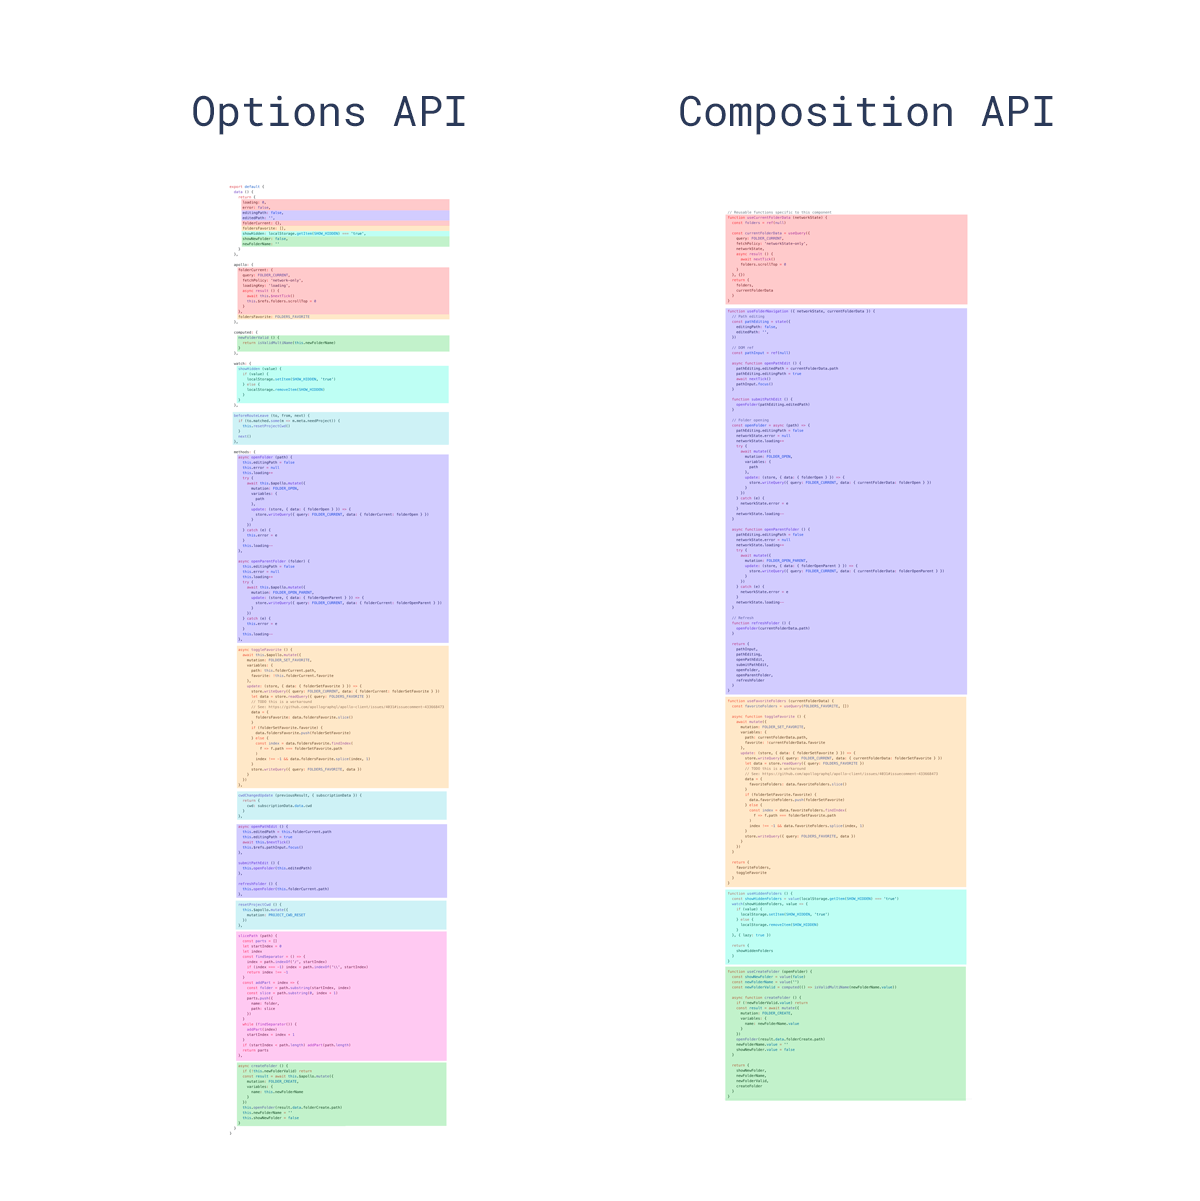 comparion-options-composition-api